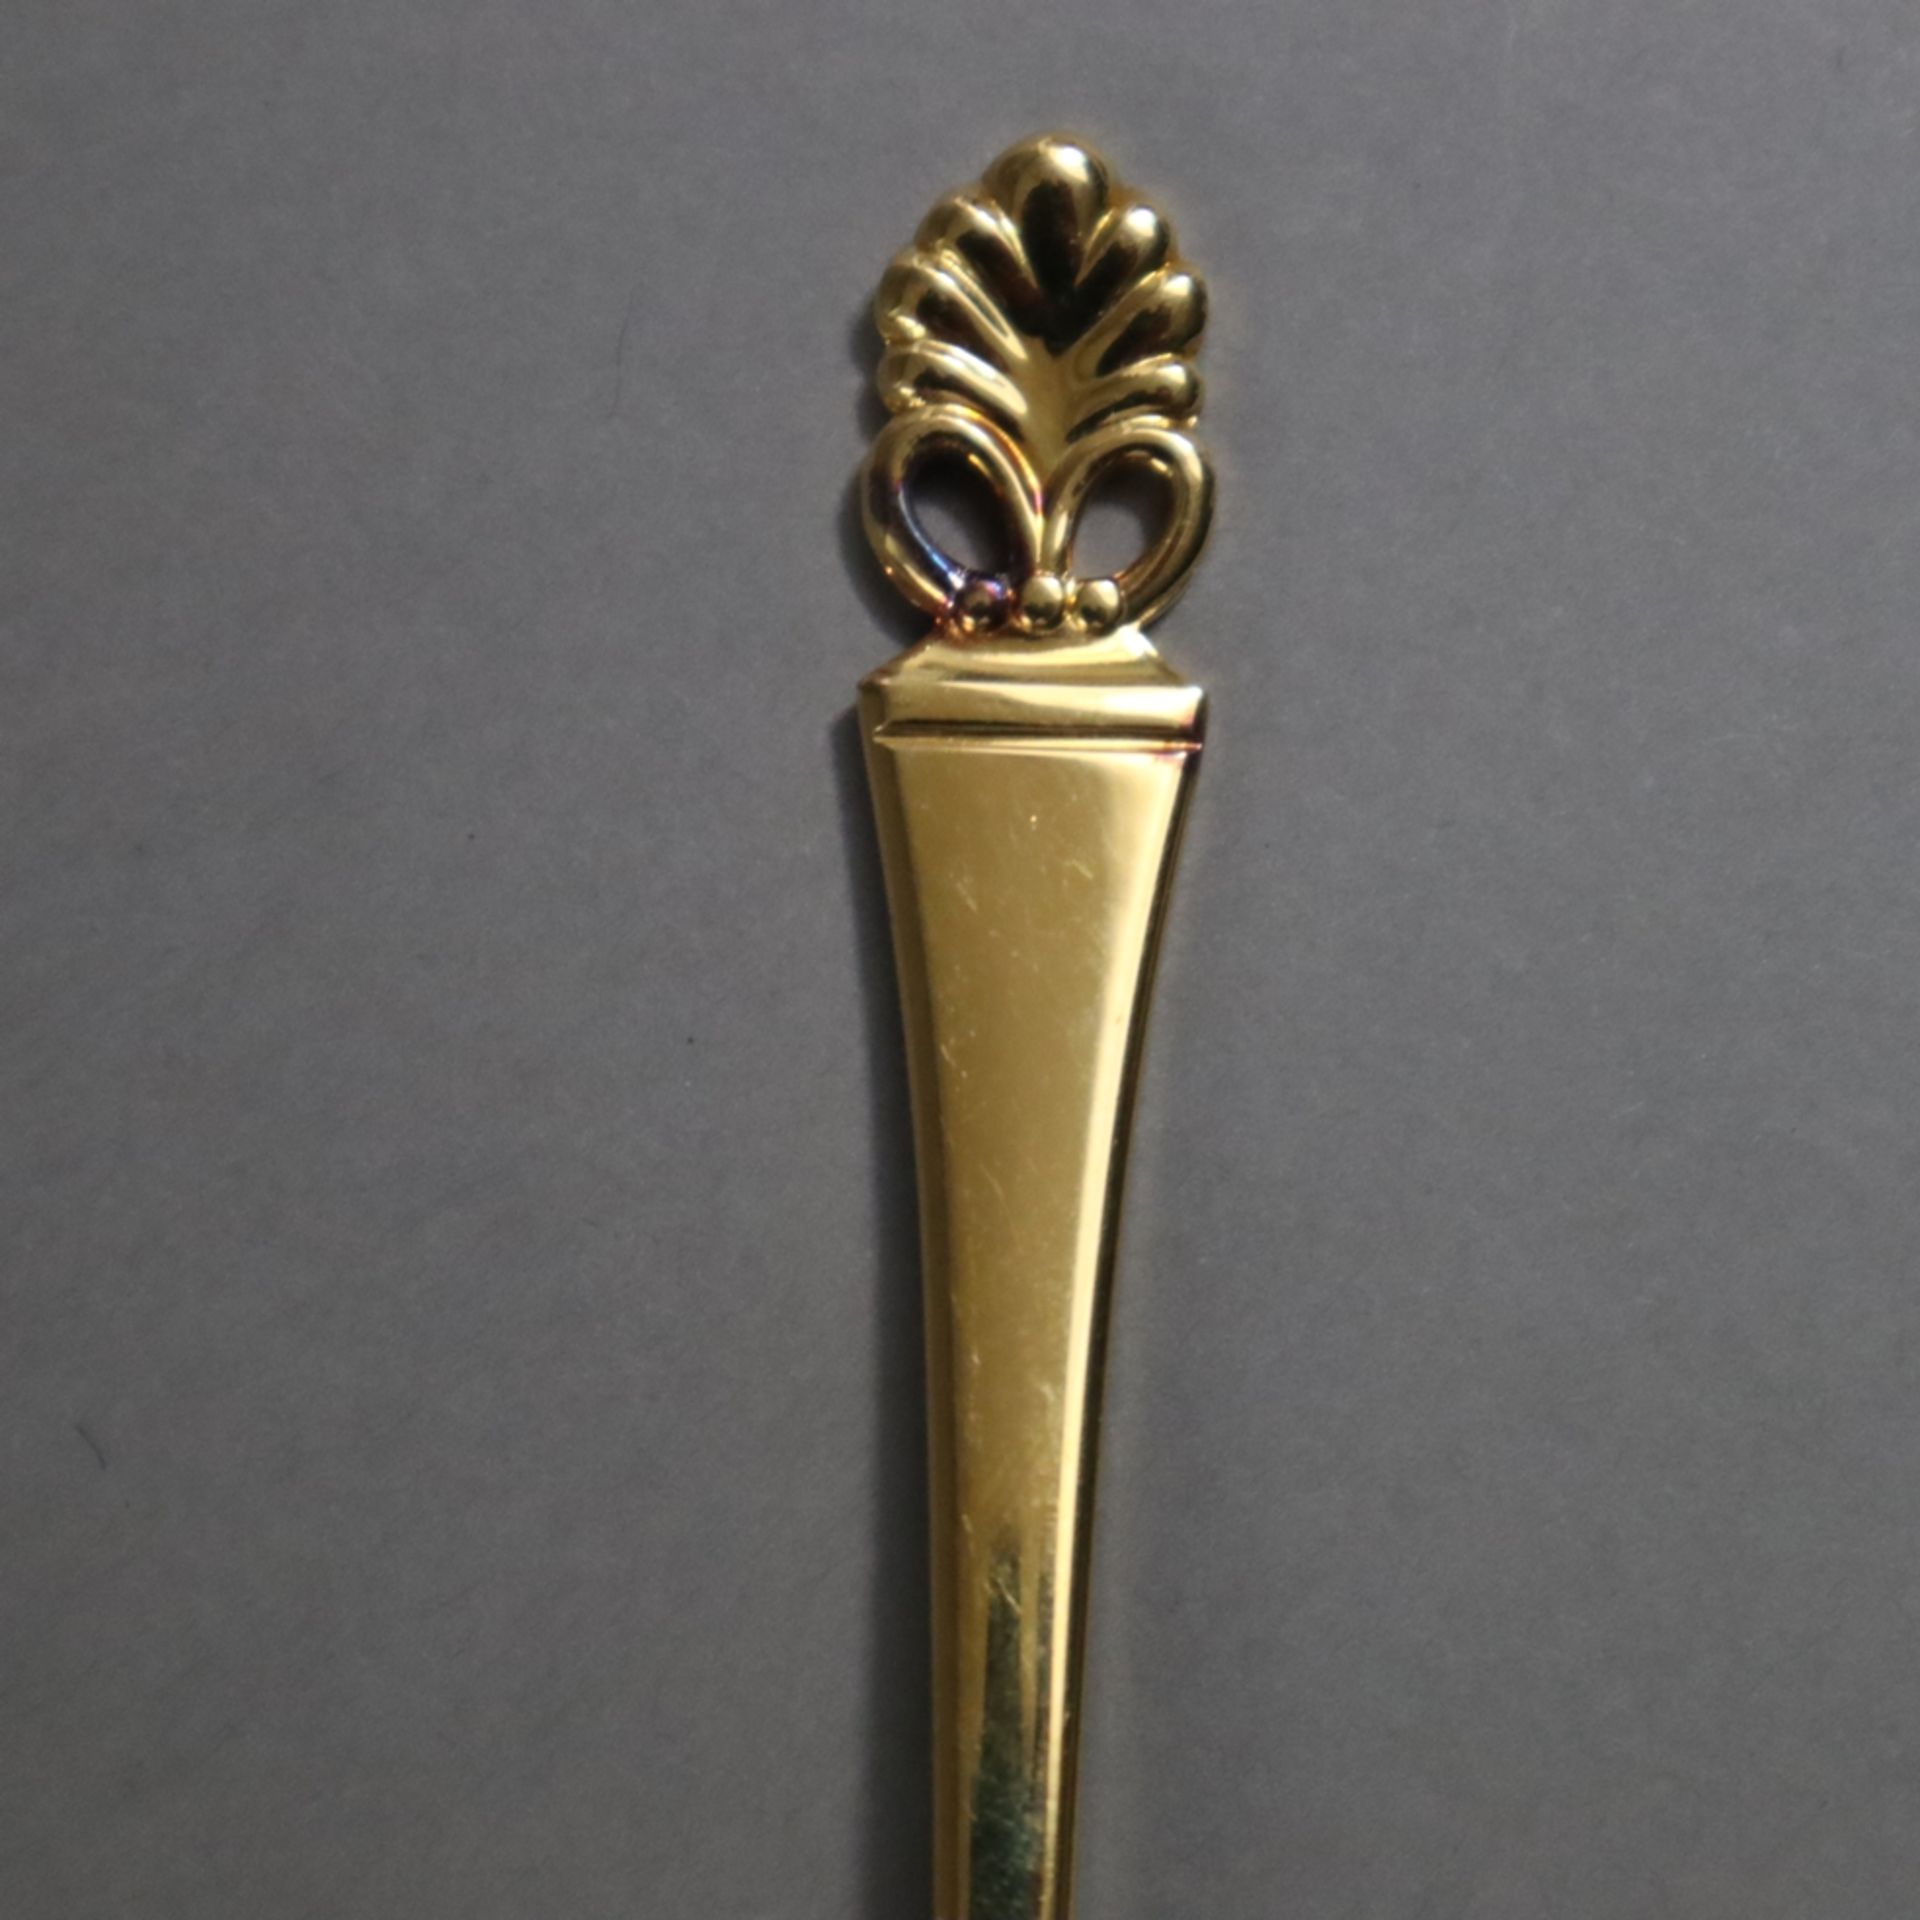 Konvolut Besteckteile - Form "Florentiner", "Wilkens", 800 Silber, vergoldet, punziert: MZ /WILKENS - Bild 4 aus 6